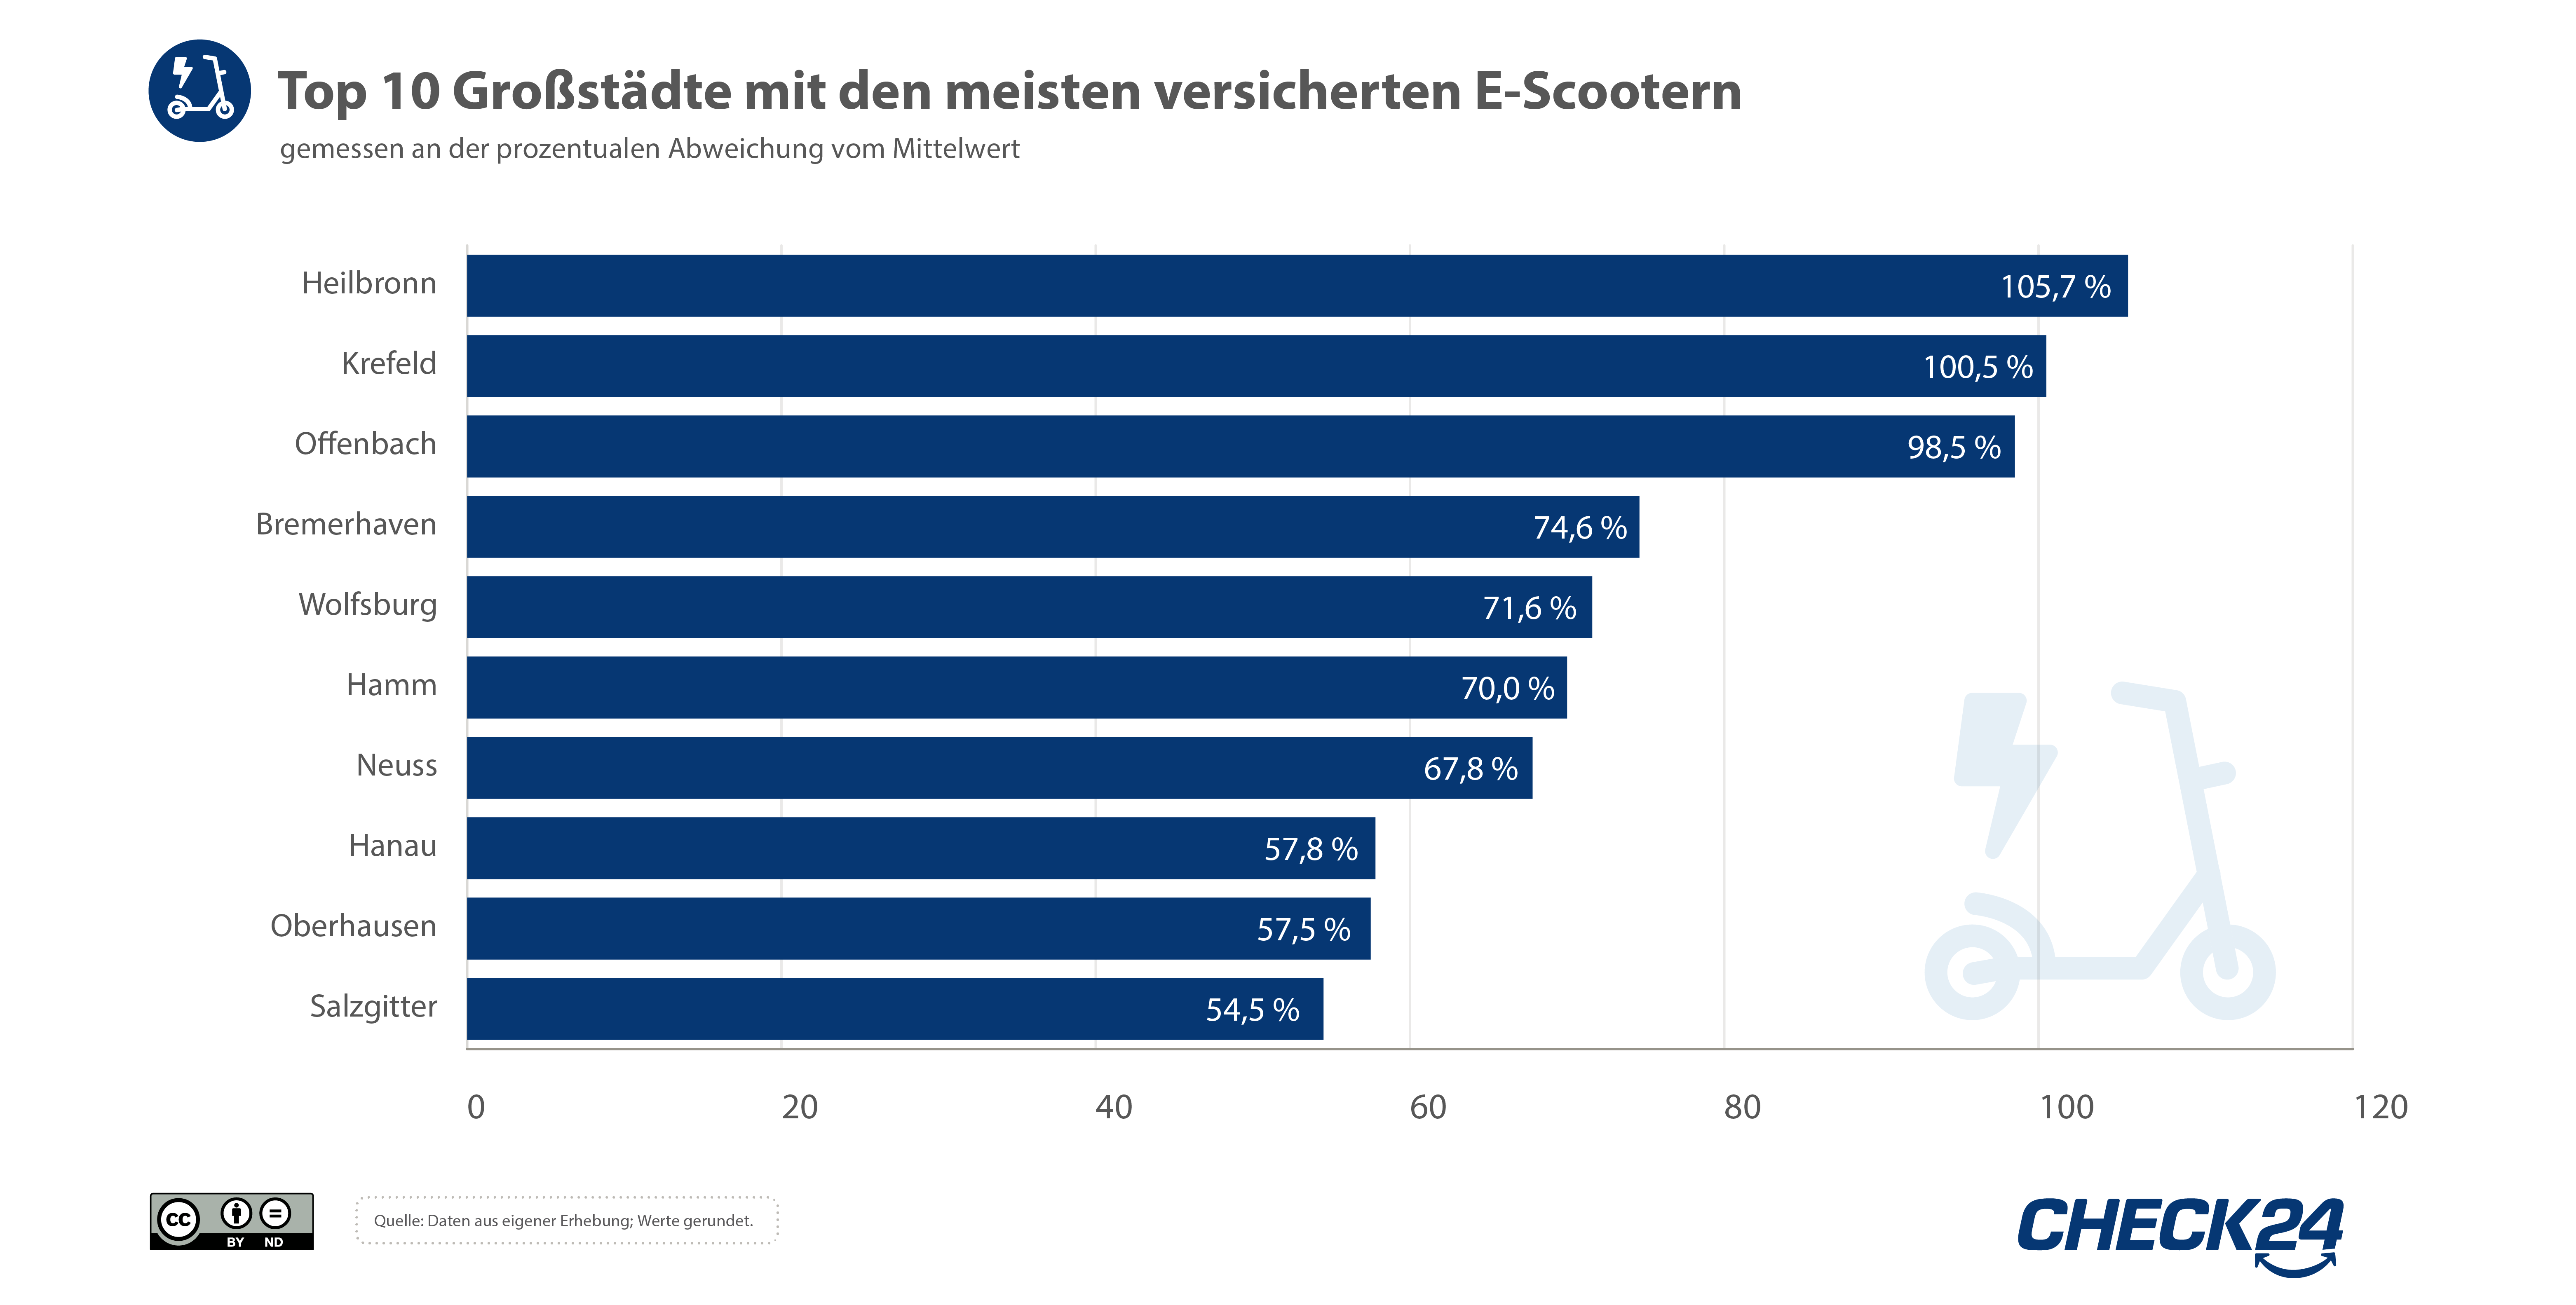 Balkendiagramm der Top 10 Großstädte mit den meisten versicherten E-Scootern.